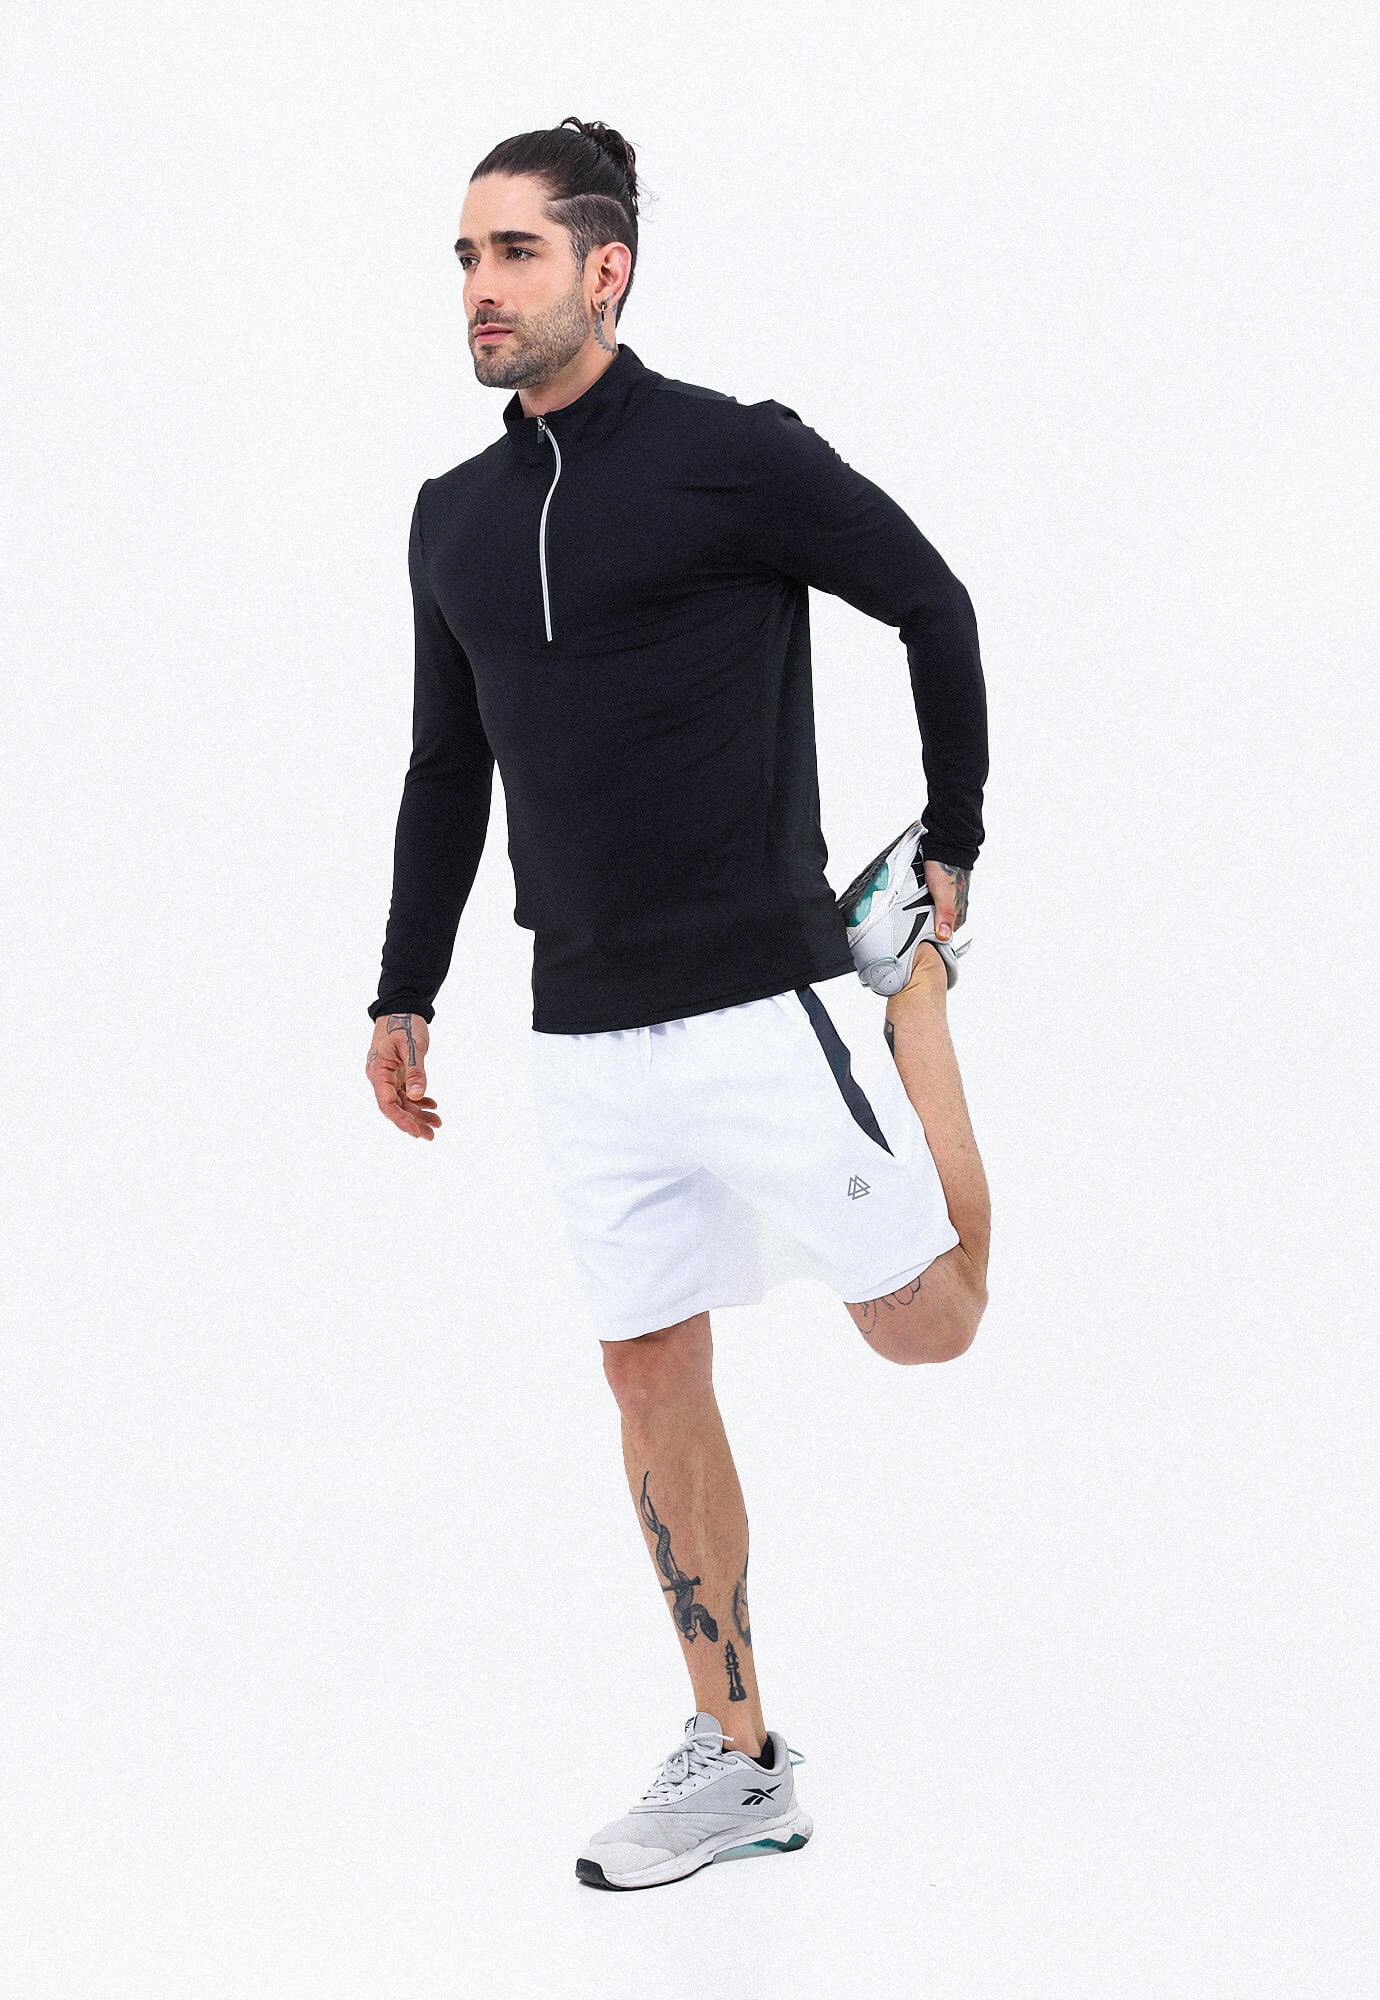 Pantaloneta deportiva blanco óptico con detalles reflectivos en laterales y ciclista interno macher para hombre